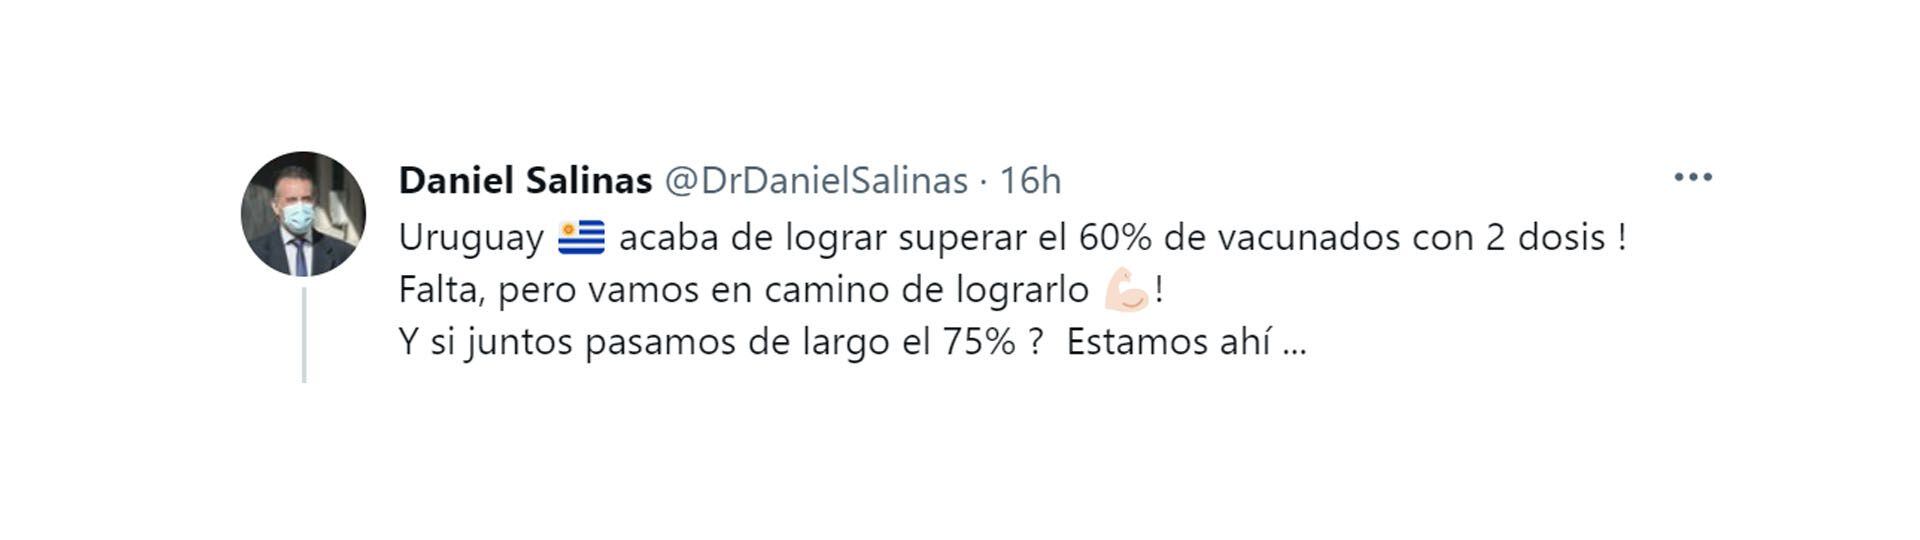 El tuit de Daniel Salinas, el ministro de Salud de Uruguay